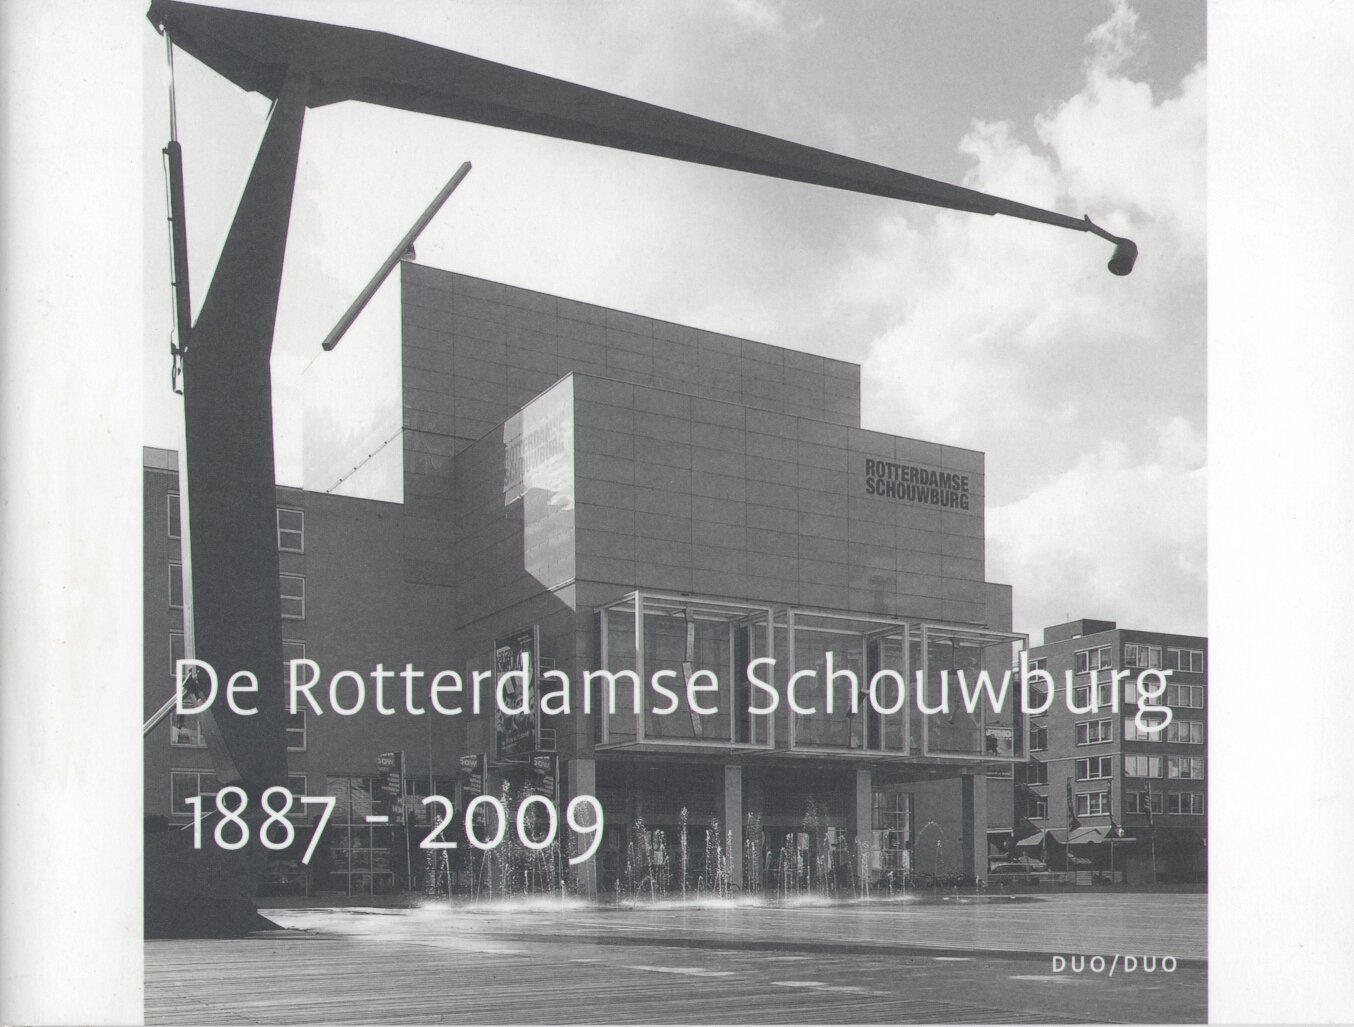 Doodewaard, Maartje van / Jong, Toos de (redactie) - De Rotterdamse Schouwburg 1887-2009 (+ CD + Polak: Rotterdam heeft weer een schouwburg. Geniet, 12 pag.)